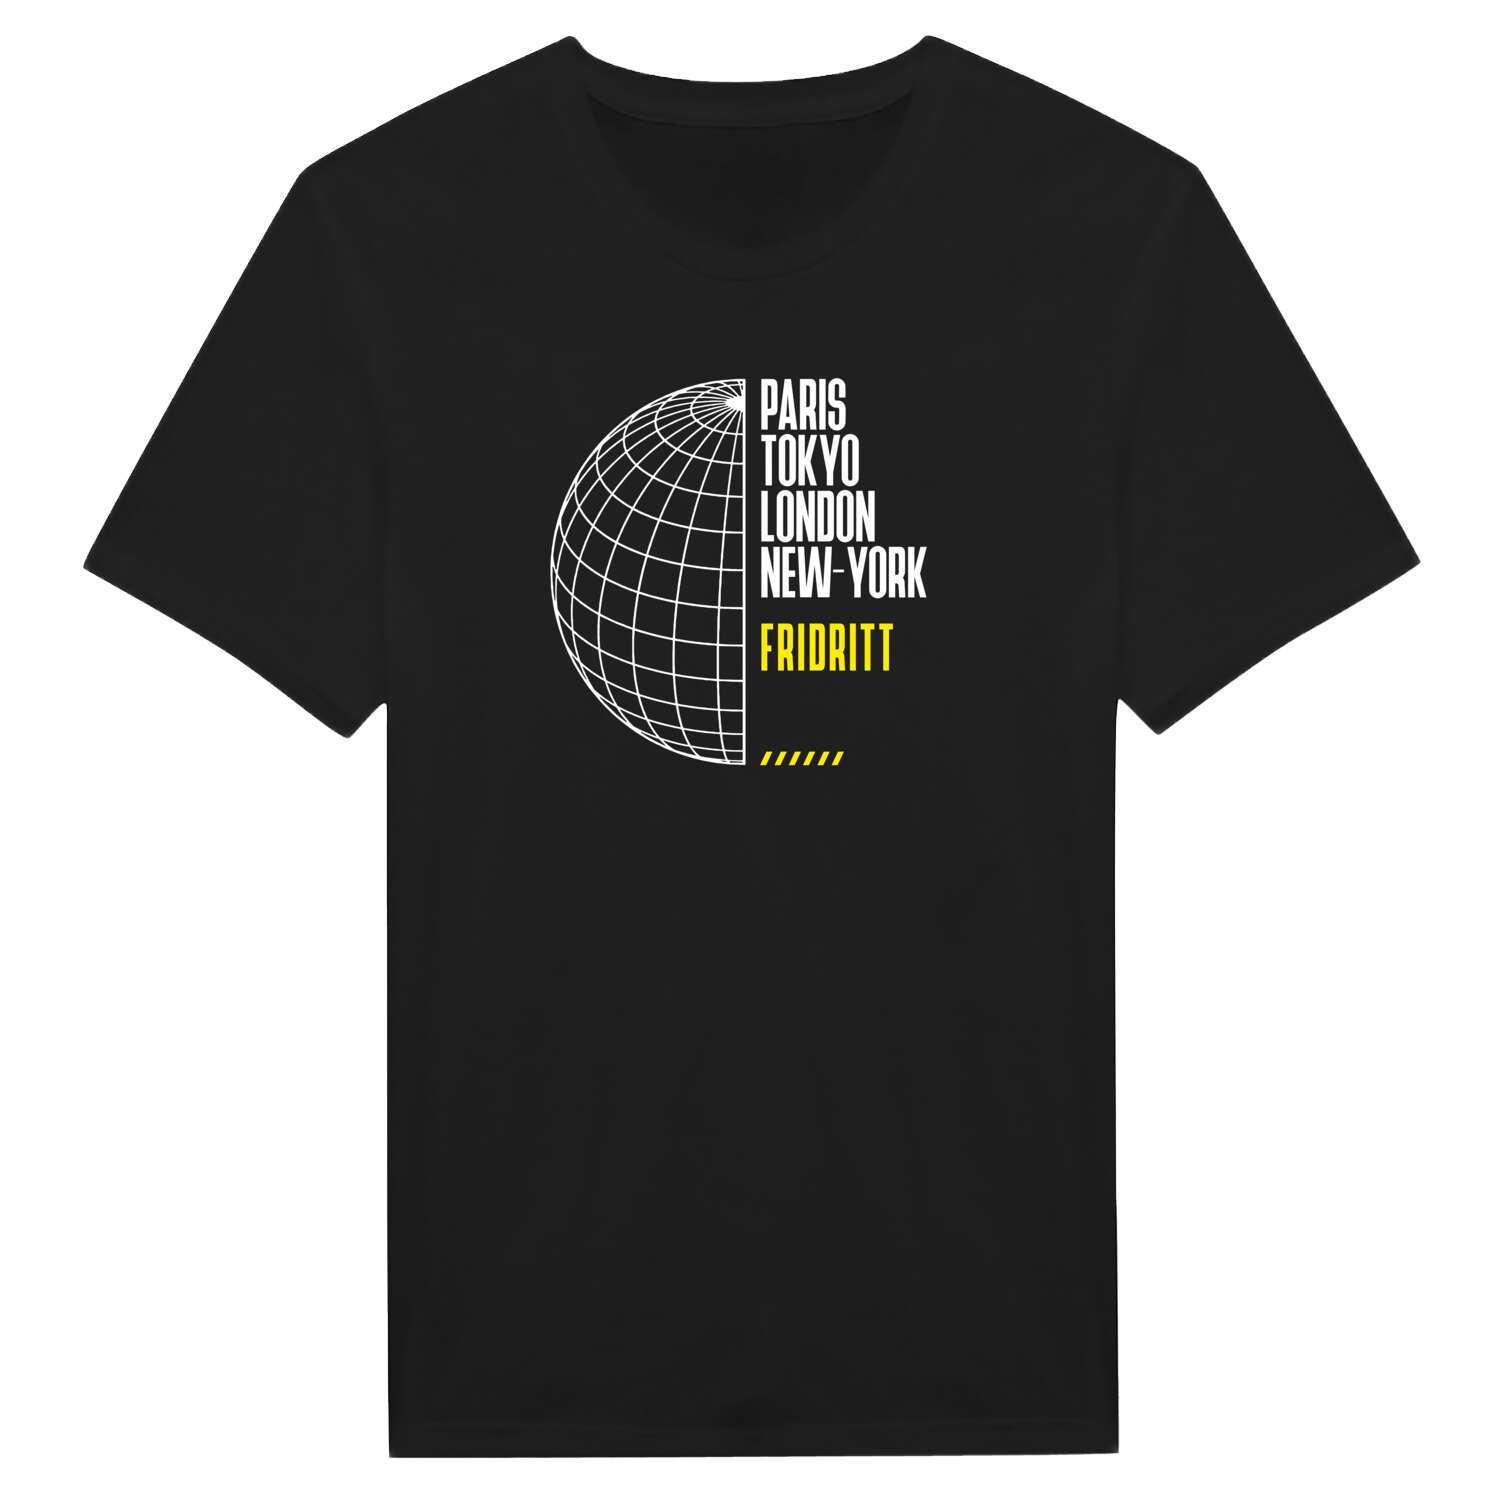 Fridritt T-Shirt »Paris Tokyo London«